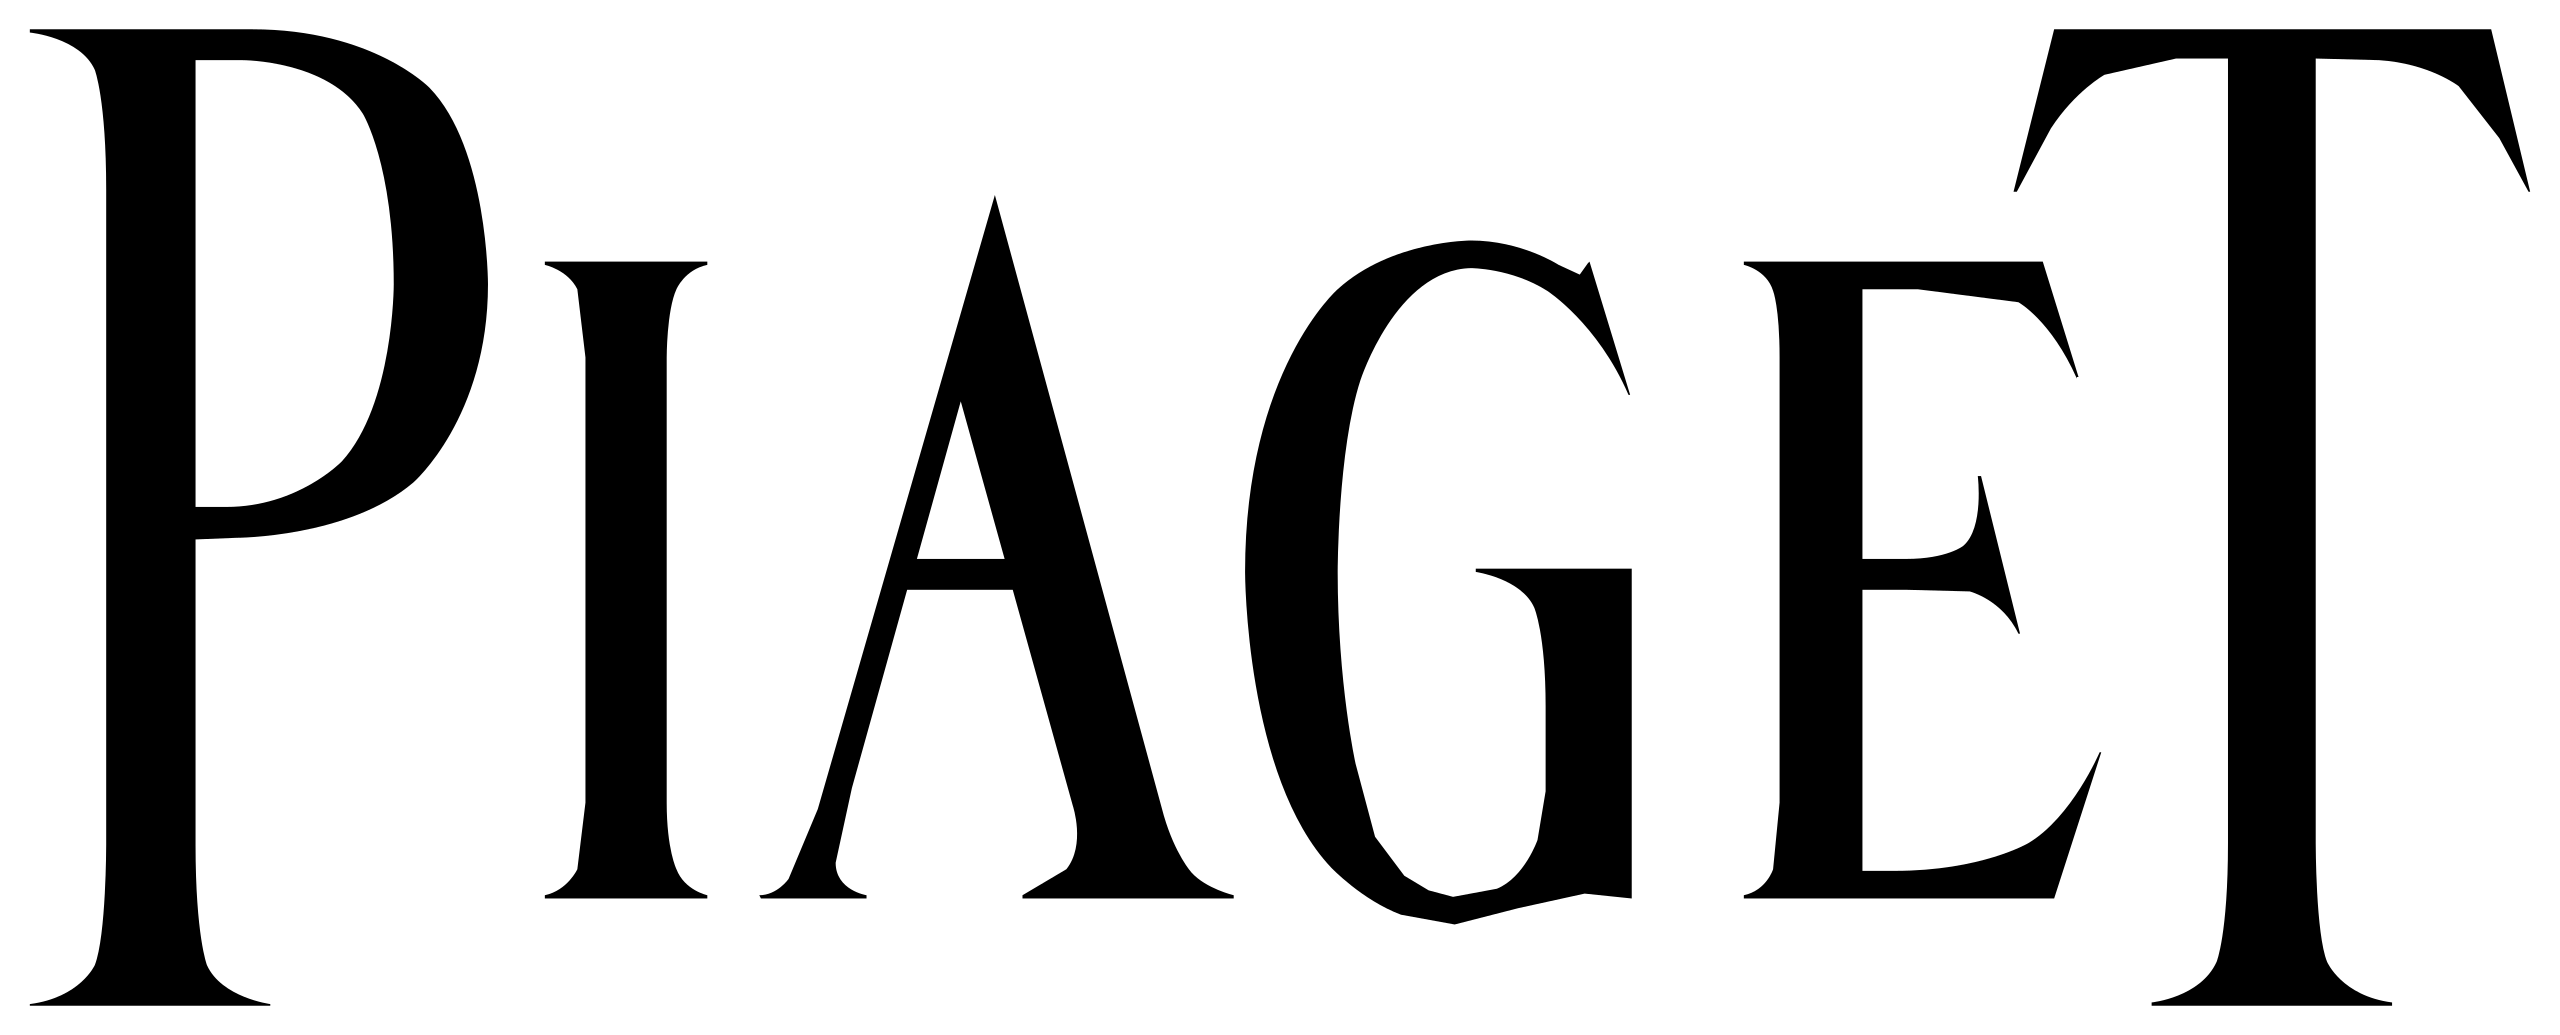 2560px-Piaget_logo.svg.png